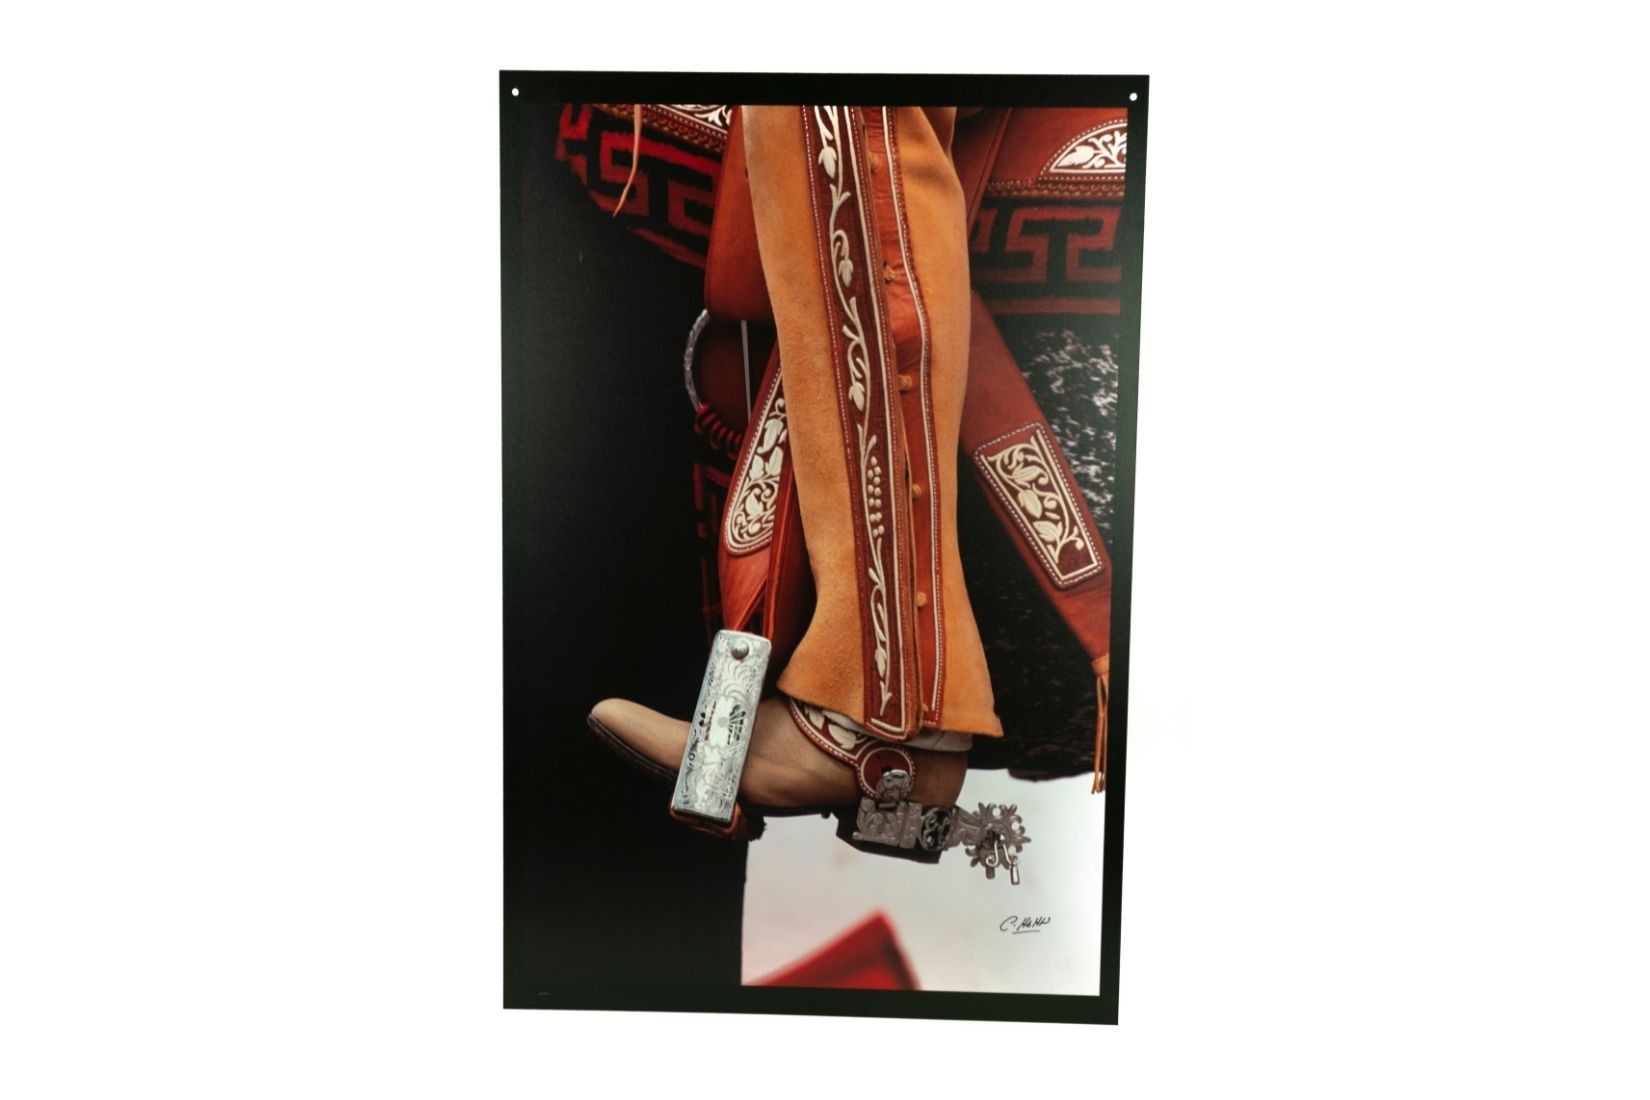 Bota de charro con espuelas de metal y estribo. Fotografía en impresión digital a color sobre trovicel. Autor. Carlos Hahn. CDMX. Col. AmigosMAP. (Foto: EKV).